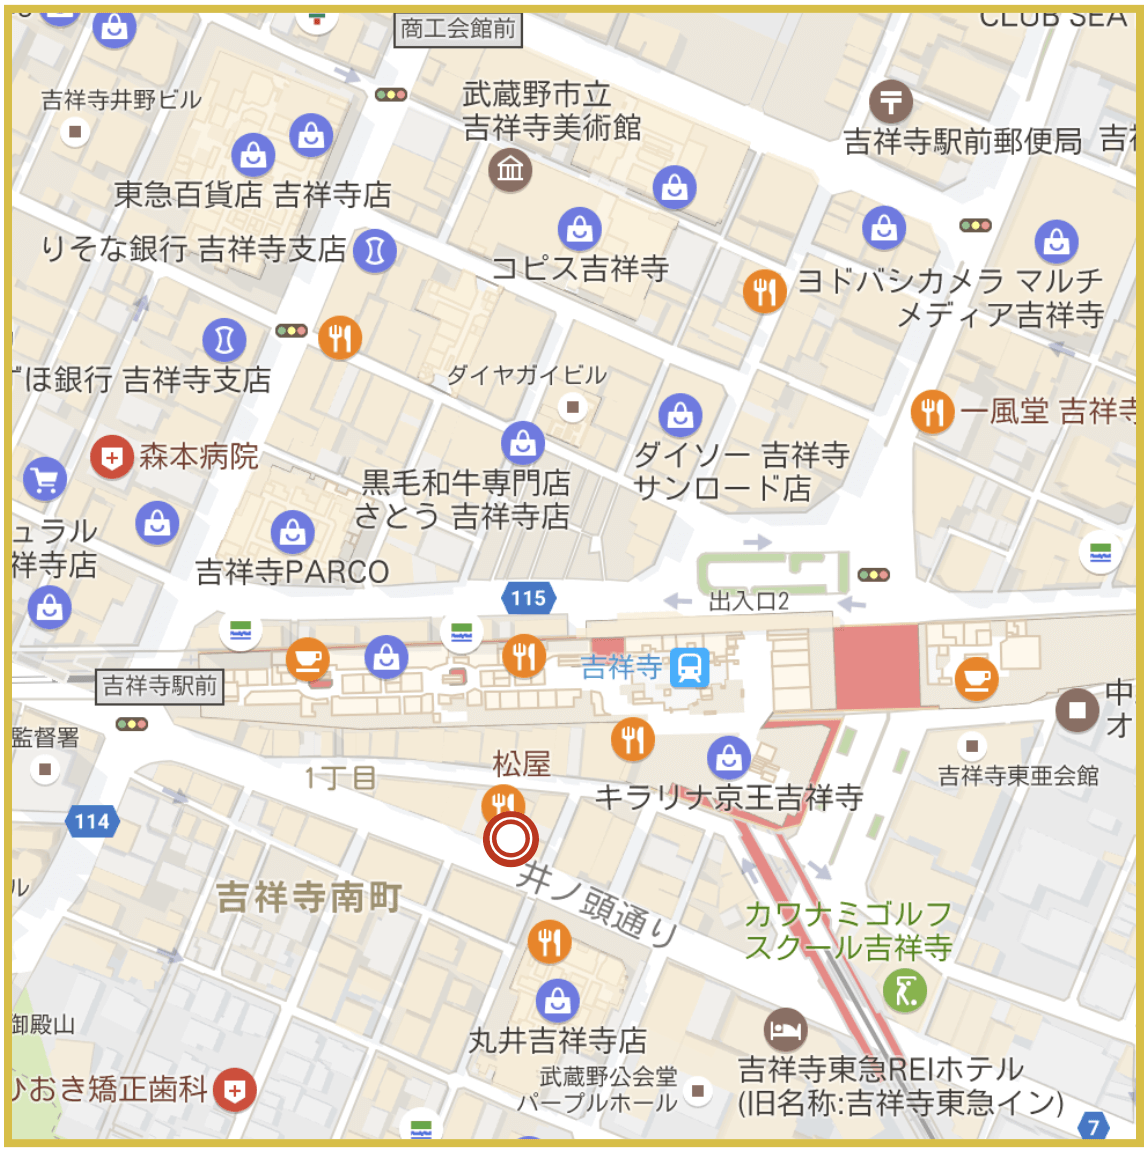 吉祥寺駅周辺にあるアイフル店舗・ATMの位置（2020年版）